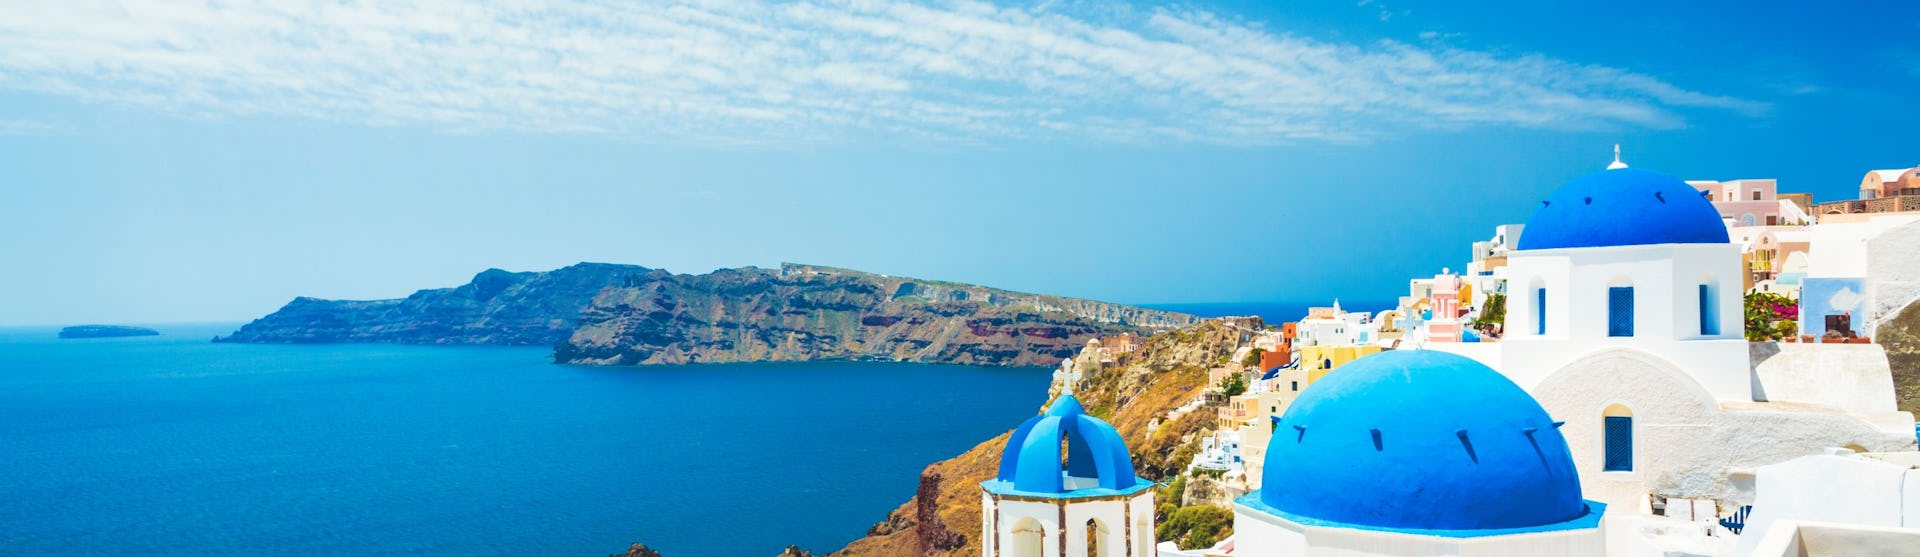 Greece-Mediterranean